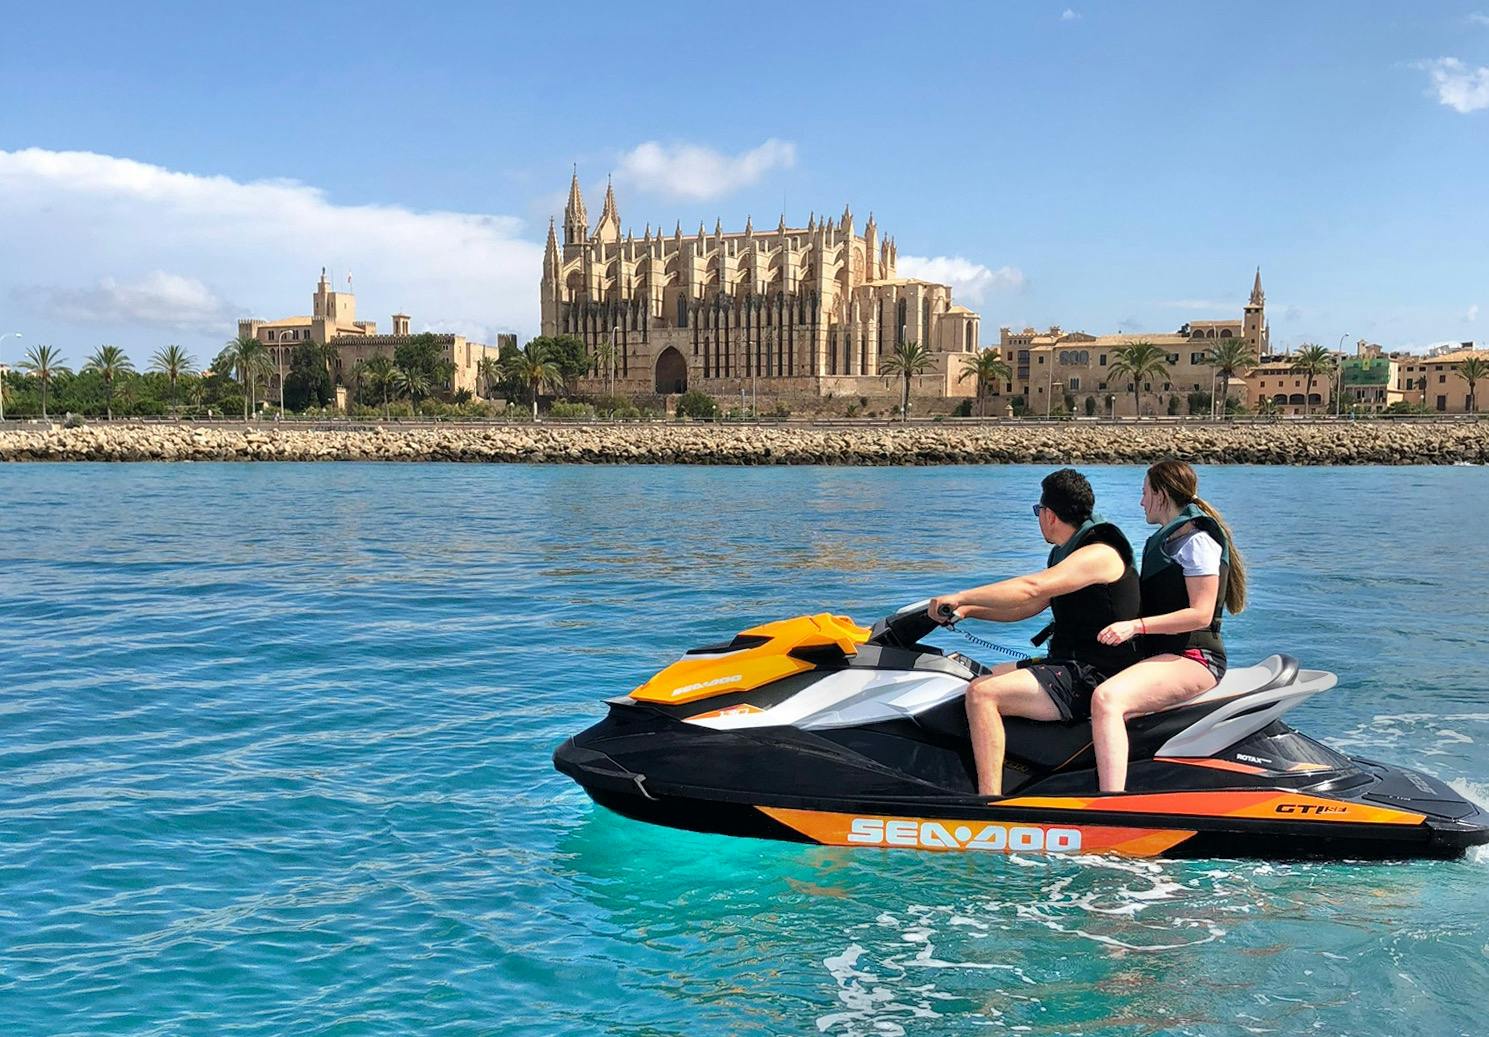 30-minütige Jetski-Tour durch Palma de Mallorca mit Besuch der Kathedrale